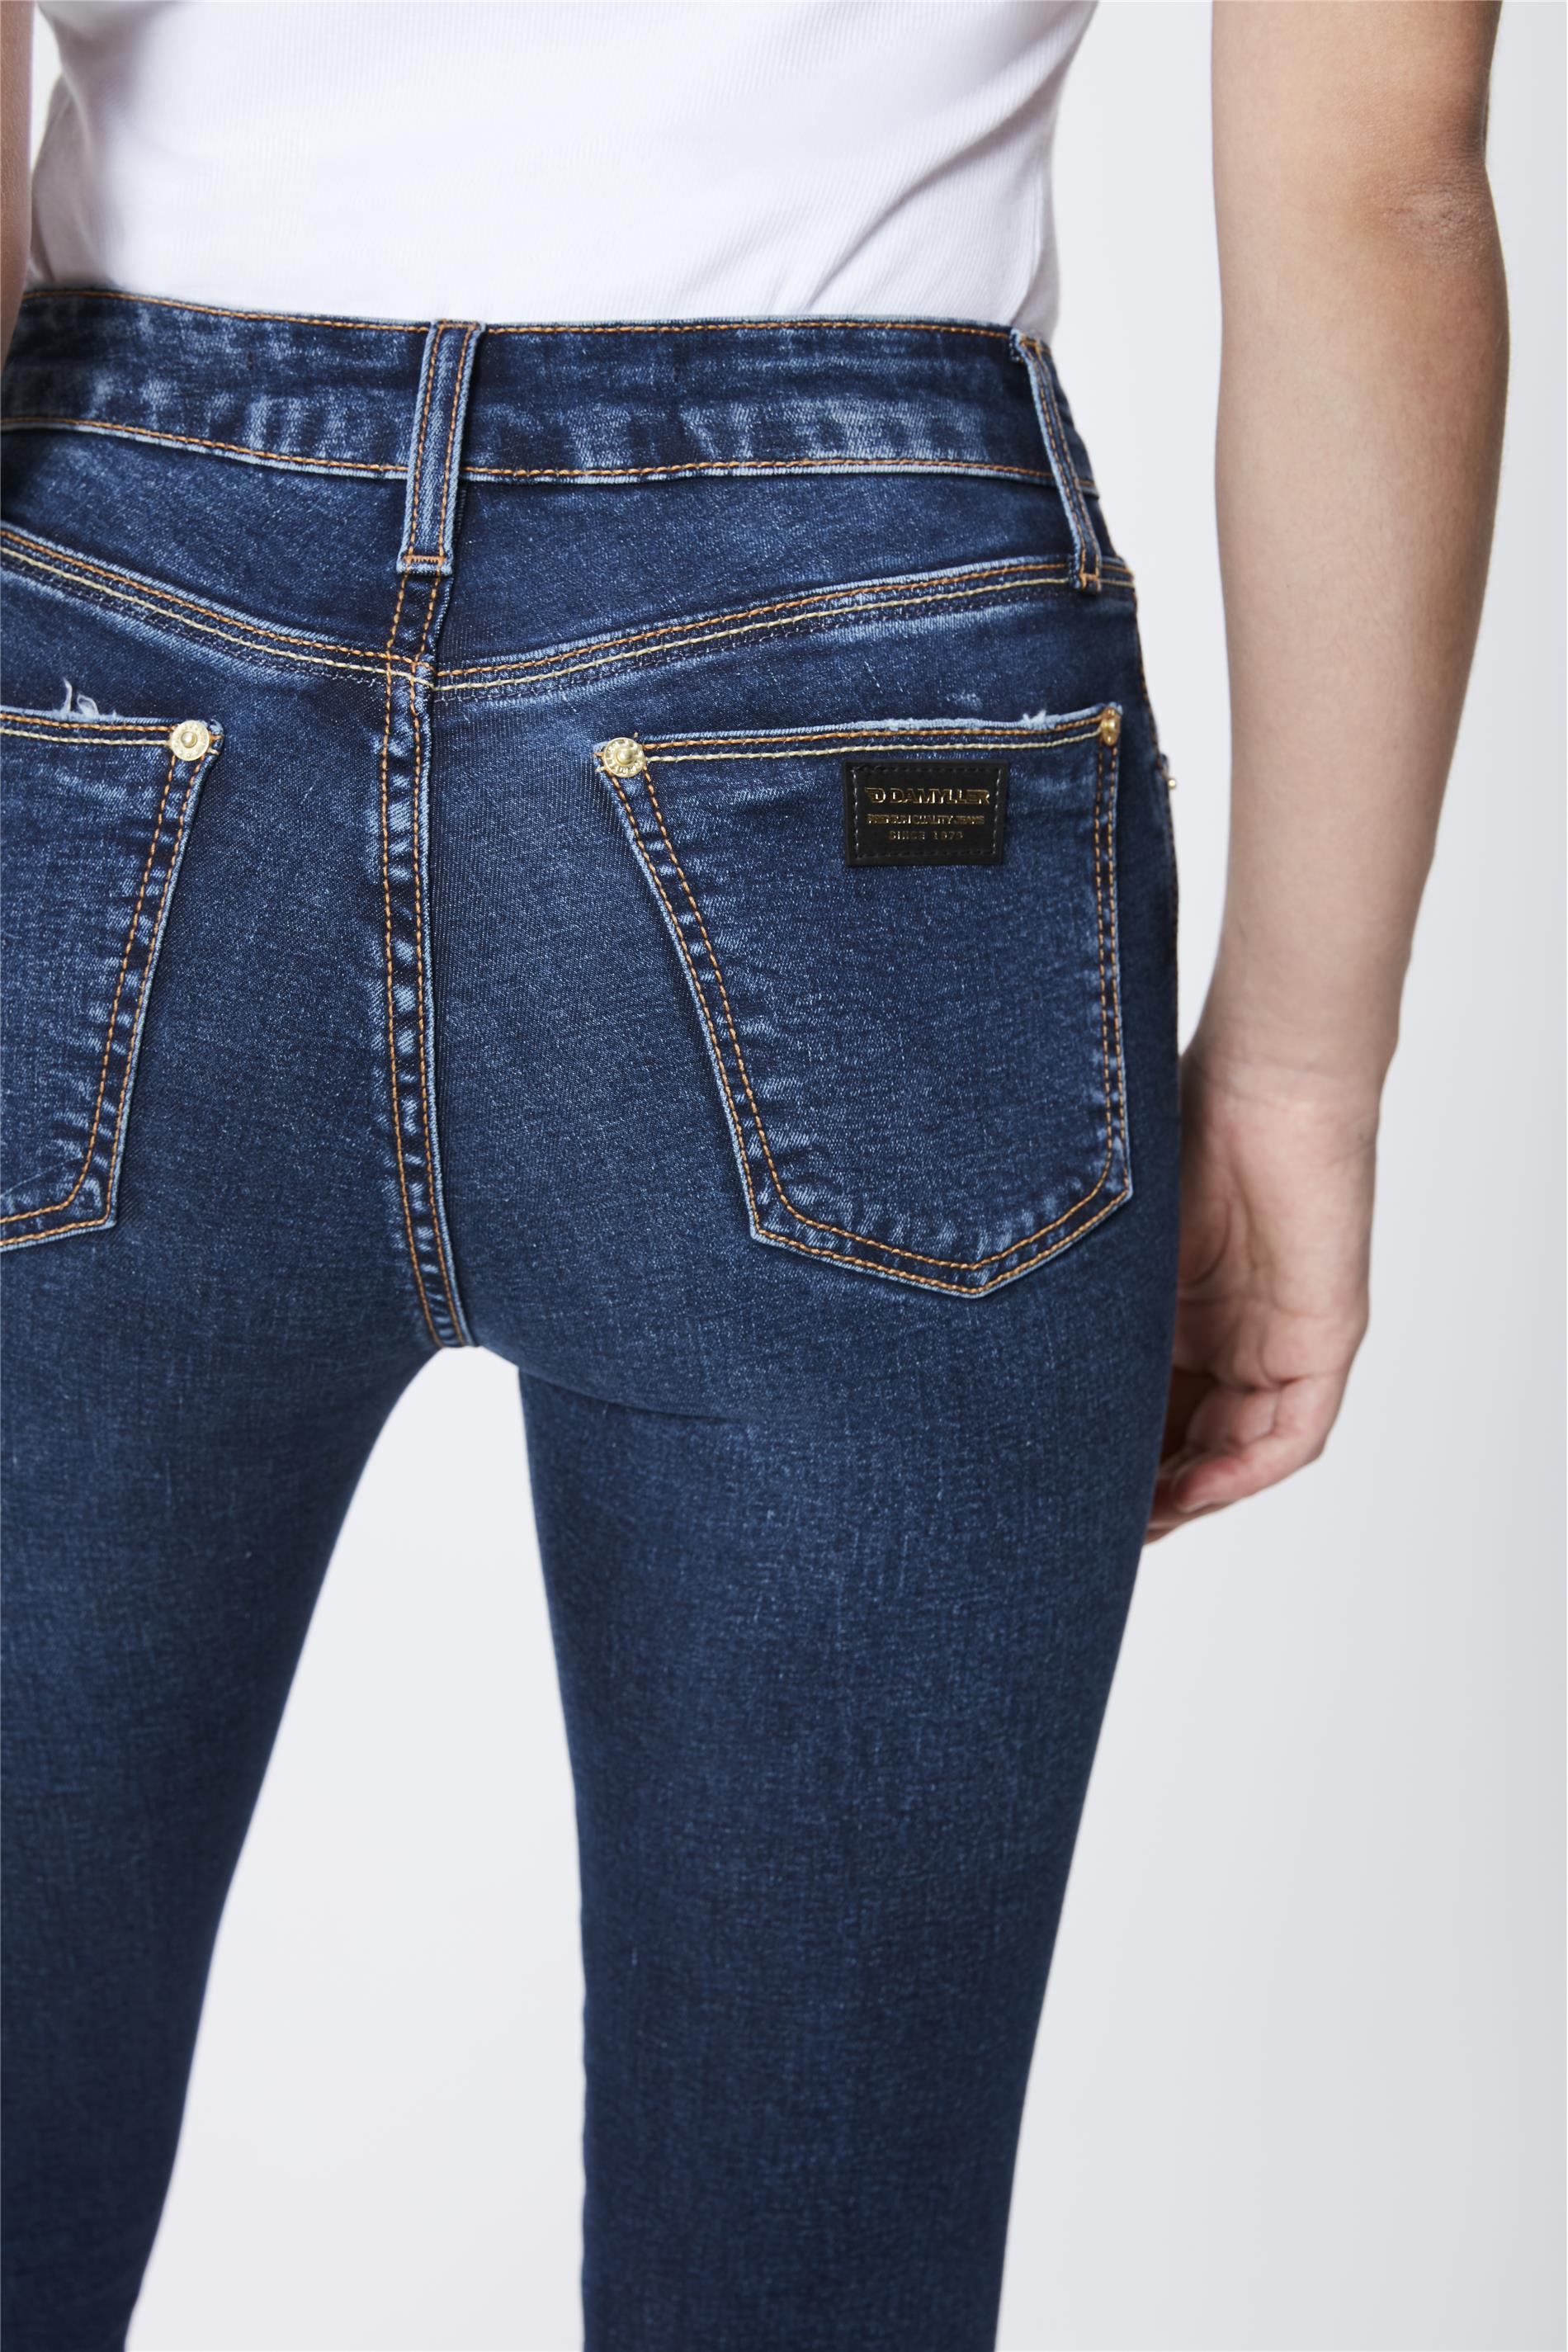 calça jeans 48 feminina cintura alta